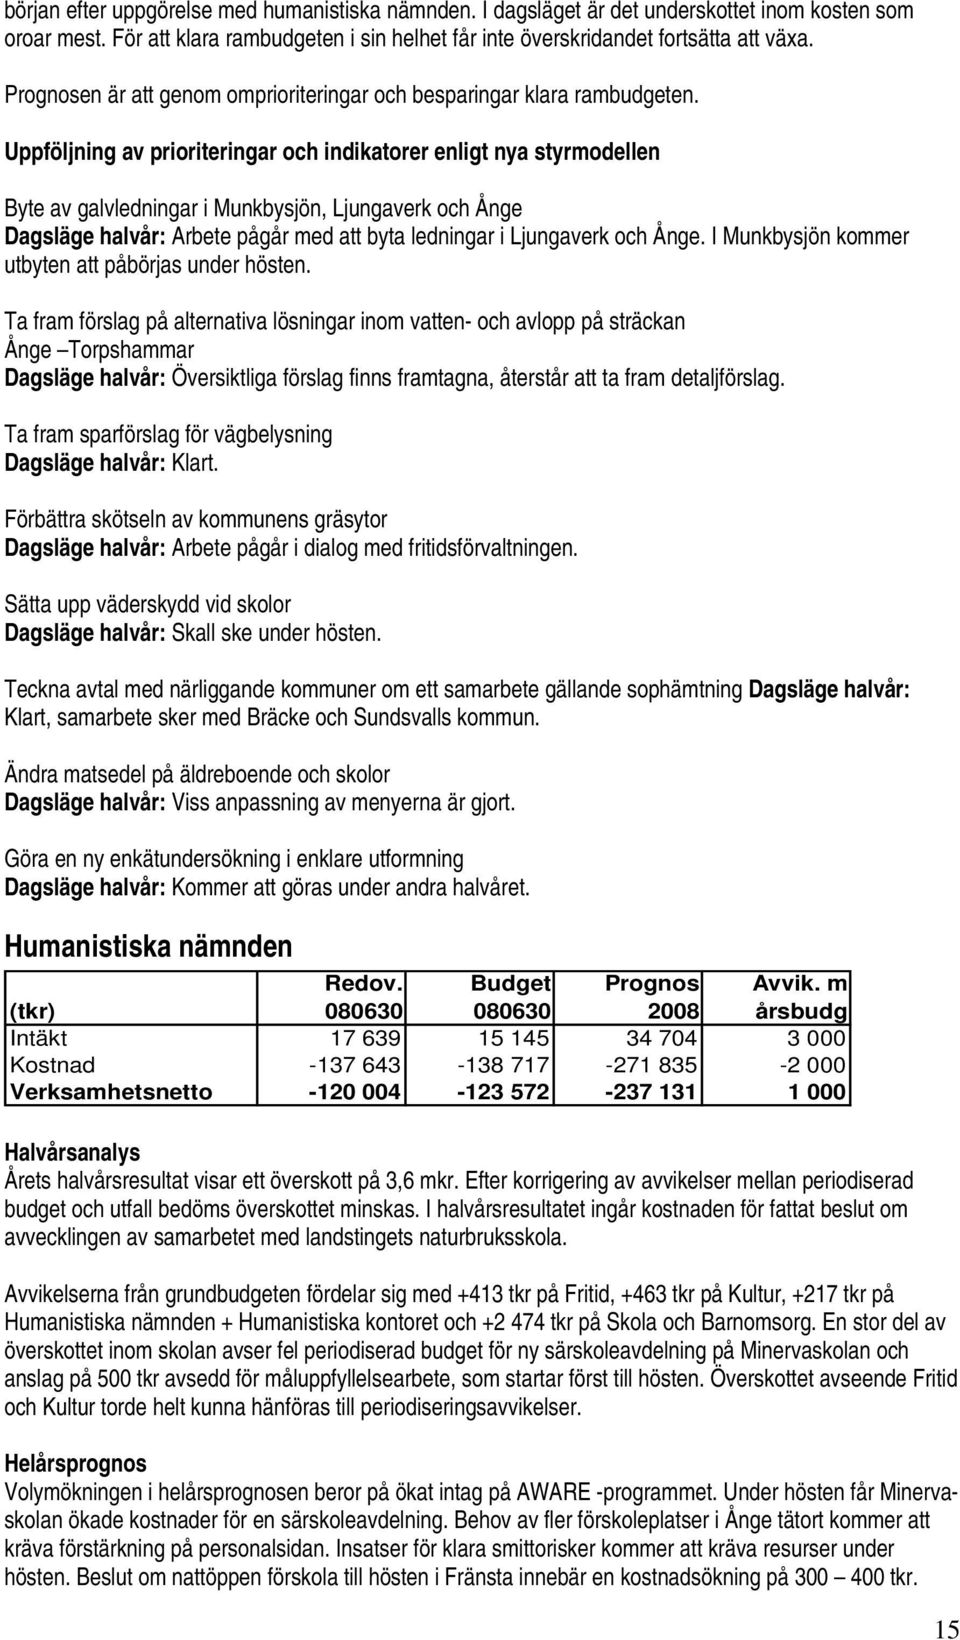 Uppföljning av prioriteringar och indikatorer enligt nya styrmodellen Byte av galvledningar i Munkbysjön, Ljungaverk och Ånge Dagsläge halvår: Arbete pågår med att byta ledningar i Ljungaverk och